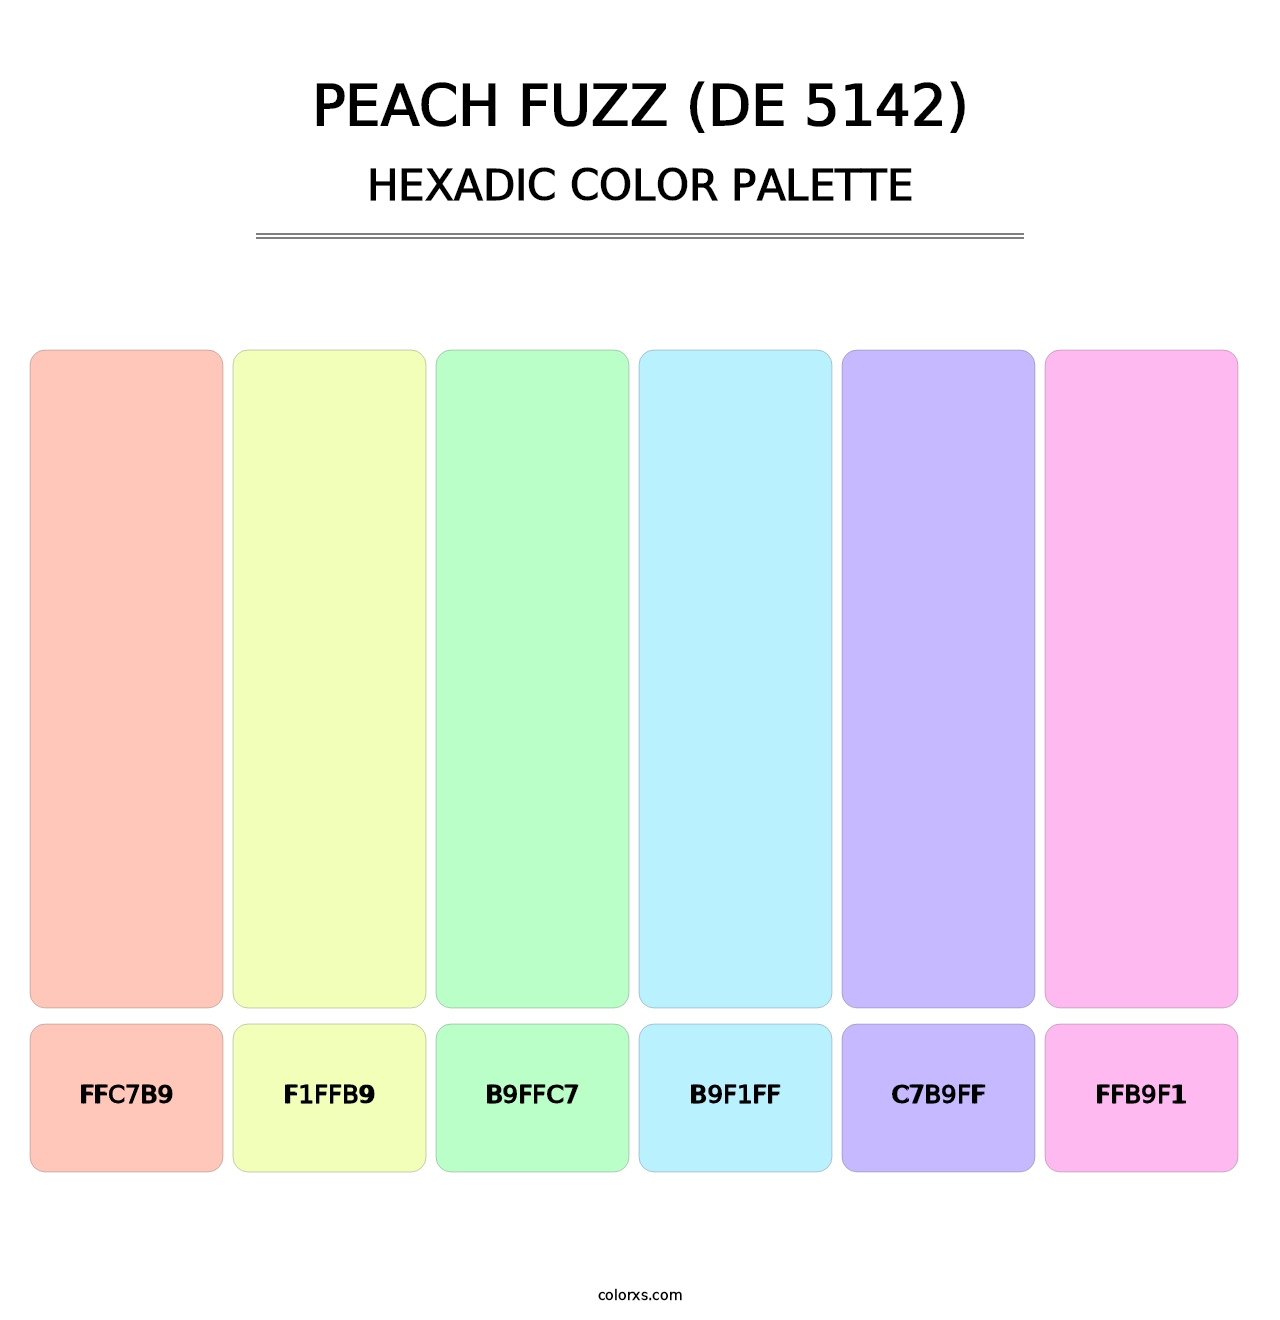 Peach Fuzz (DE 5142) - Hexadic Color Palette